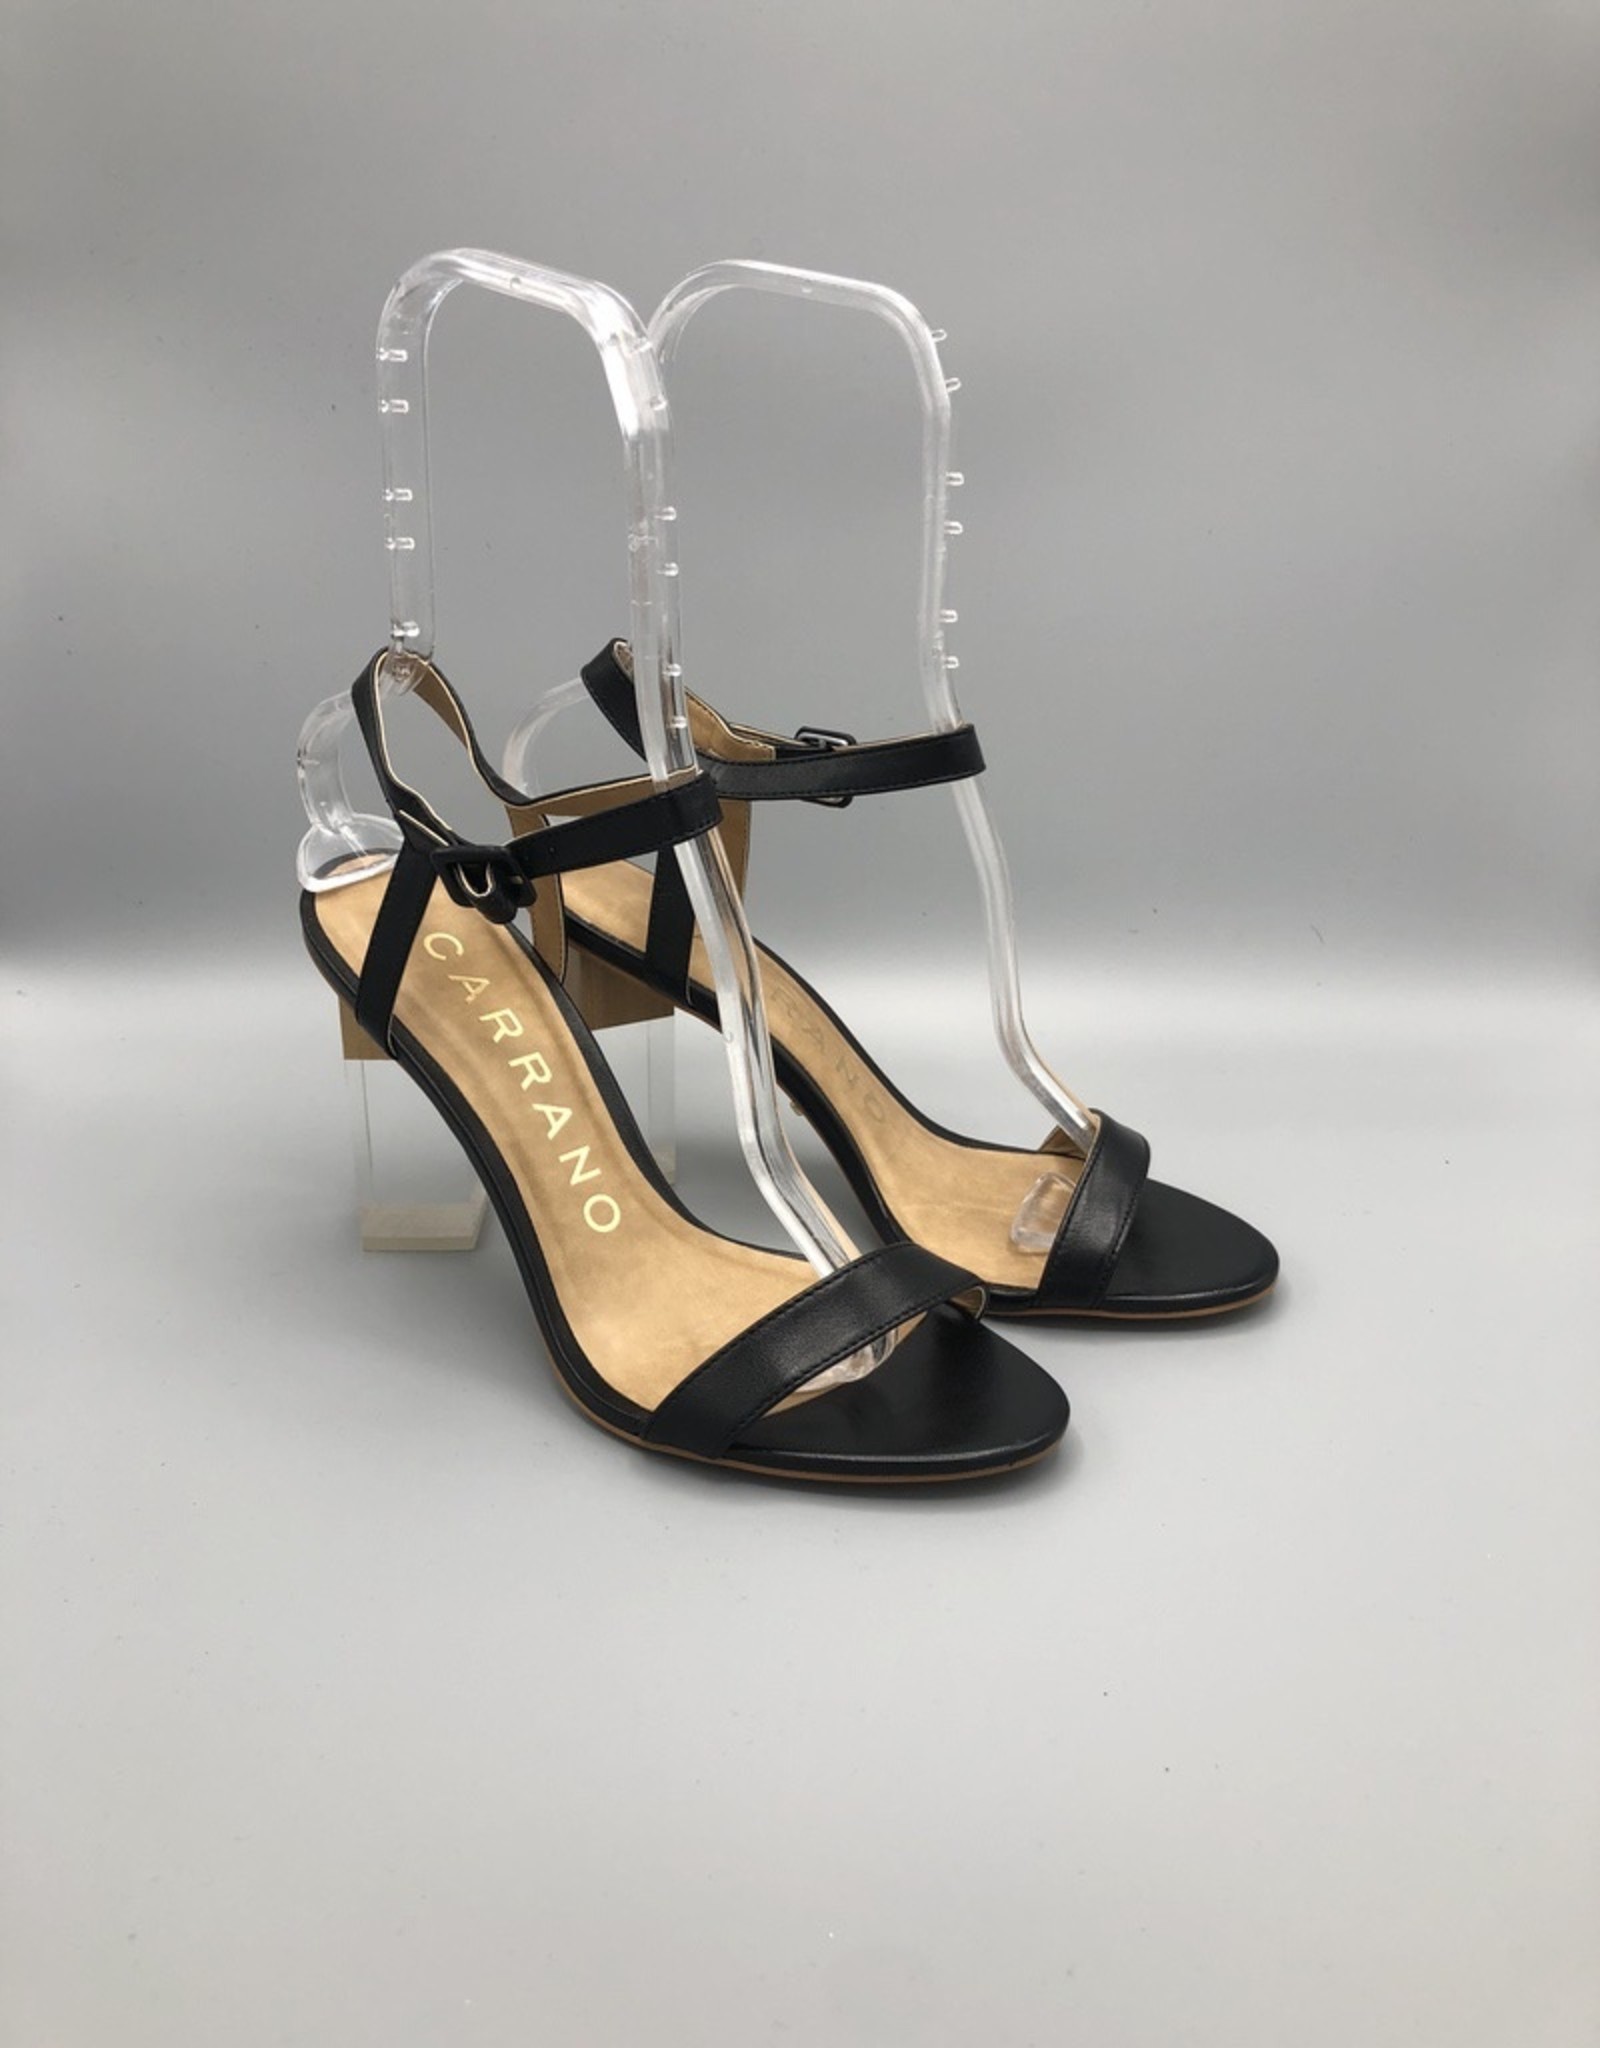 acrylic heel shoes